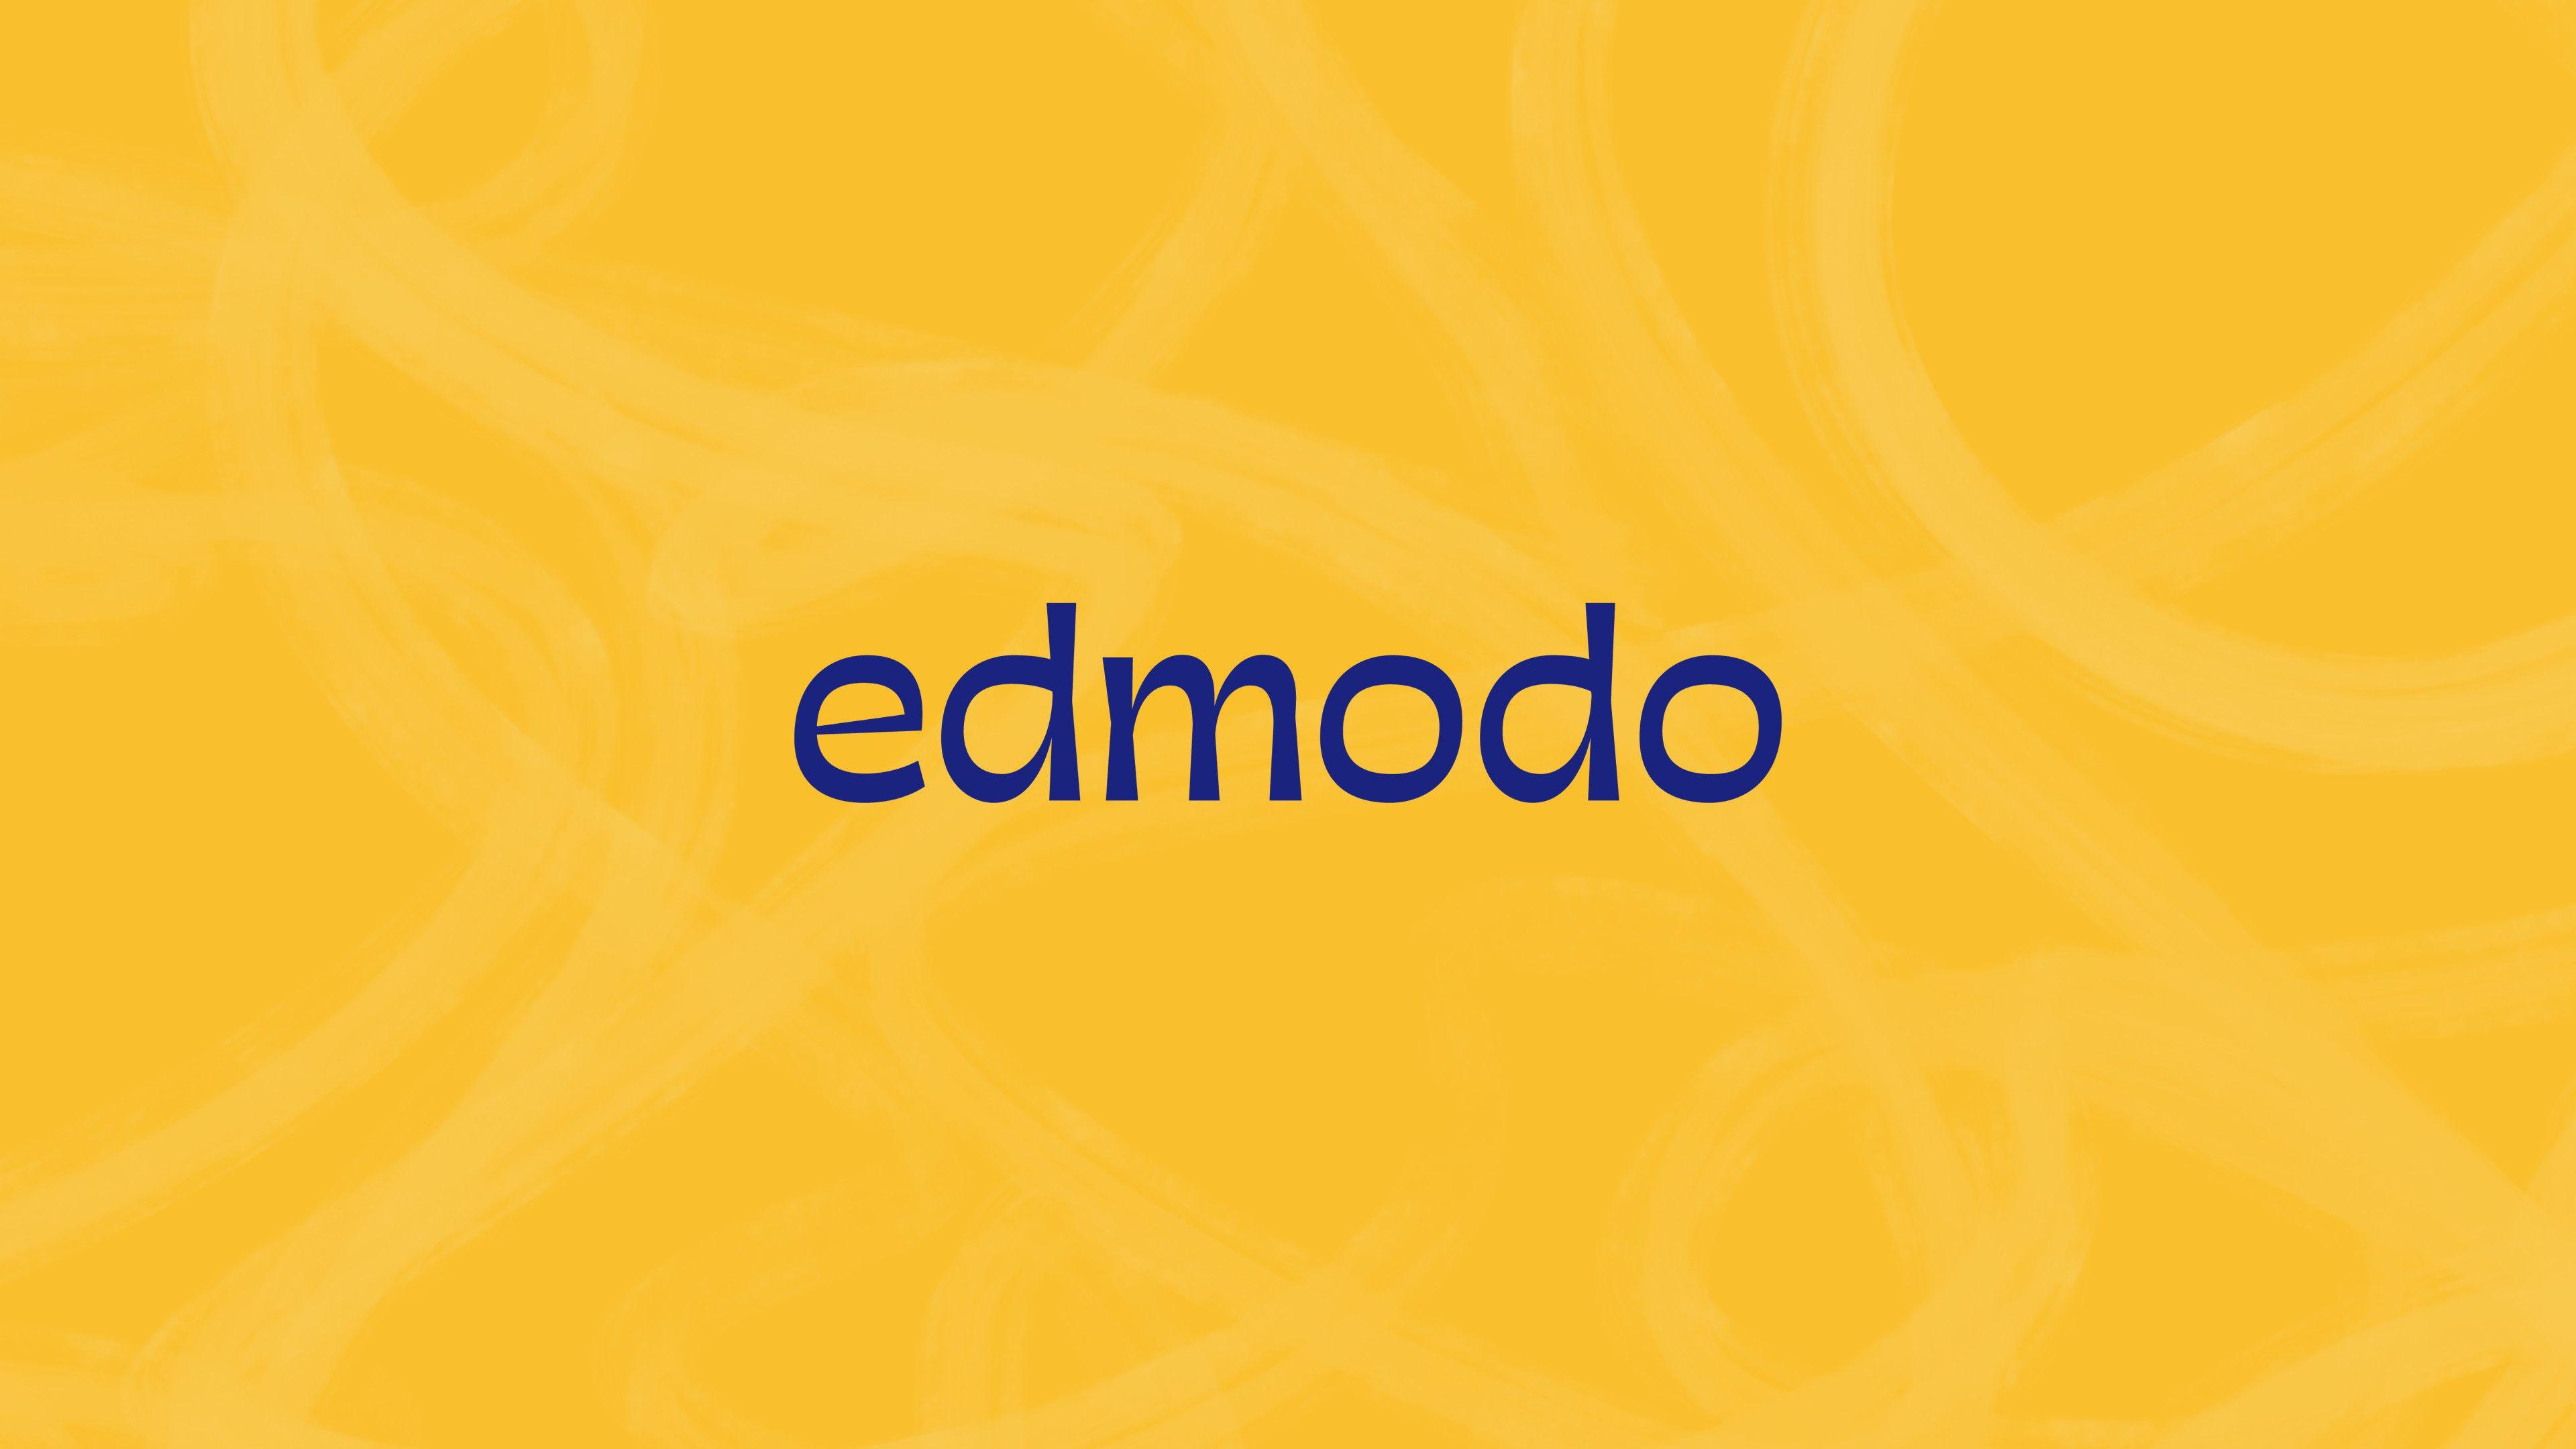 Edmodo Logo - Edmodo